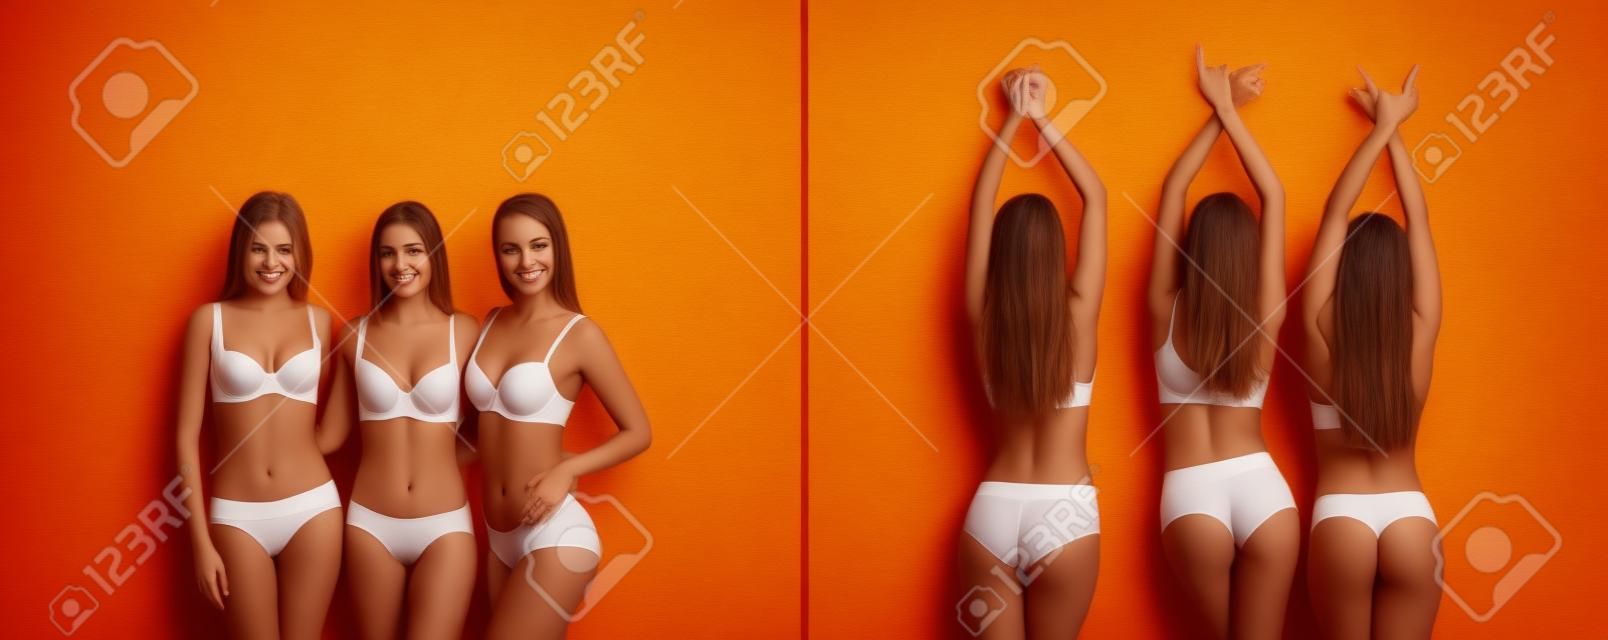 Belle giovani donne in biancheria intima su sfondo colorato. Vista anteriore e posteriore